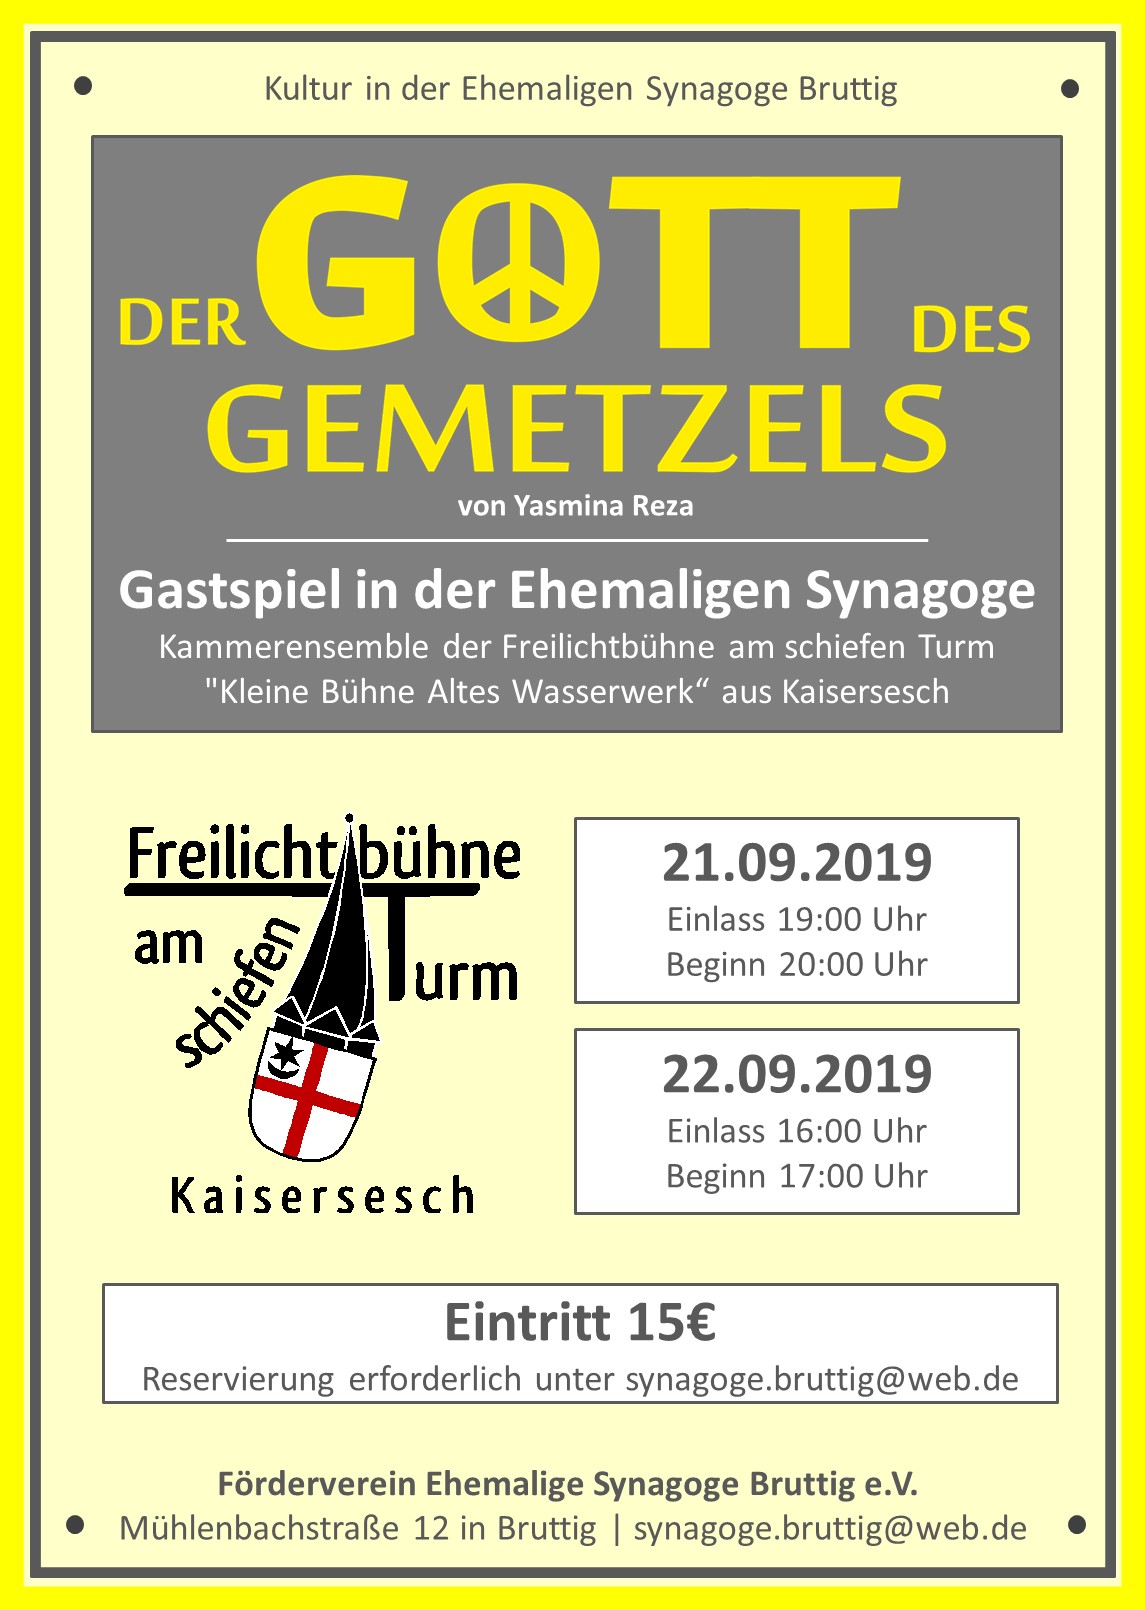 Synagoge Bruttig Der Gott des Gemetzels Gastspiel September 2019